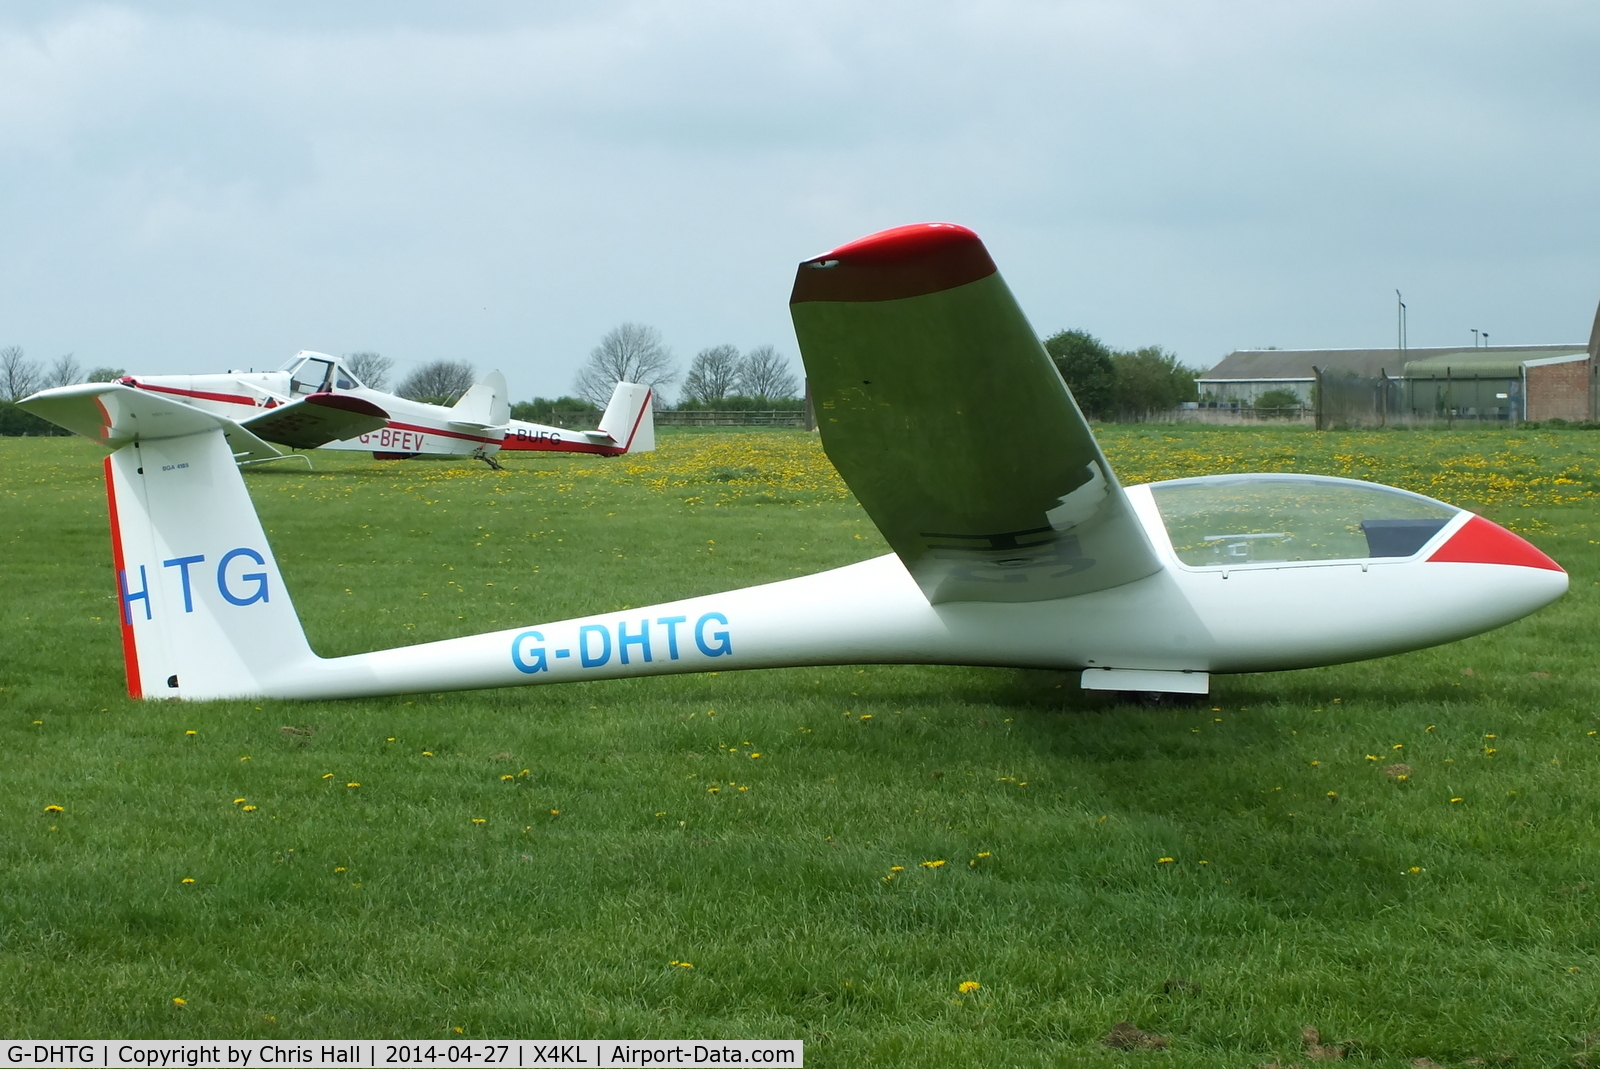 G-DHTG, 1977 Grob G-102 Astir CS C/N 1510, Trent Valley Gliding Club, Kirton in Lindsay